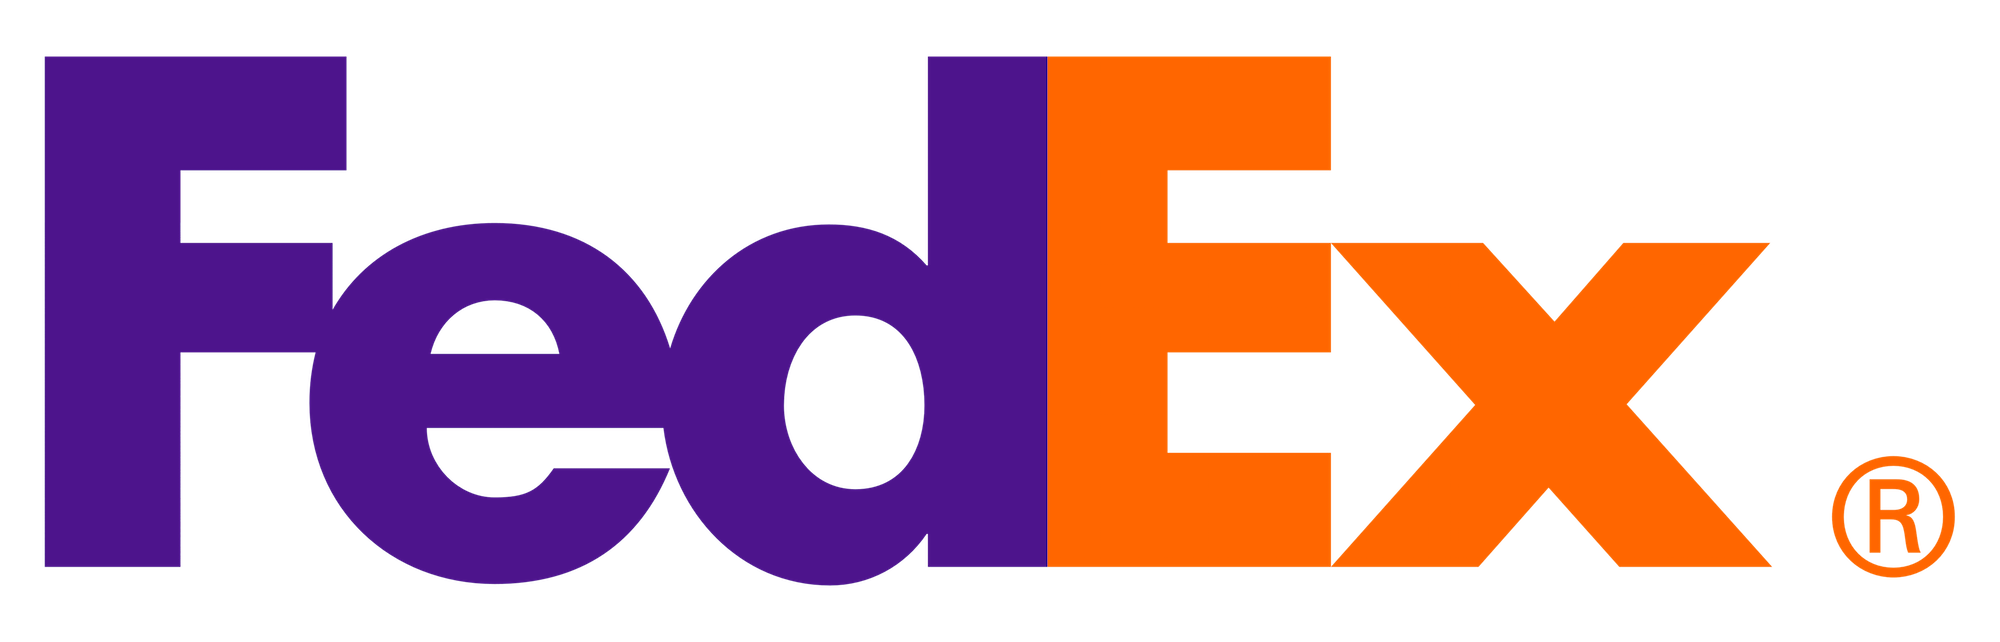 espacio negativo en el logotipo de fedex usando la ley de figura y fondo